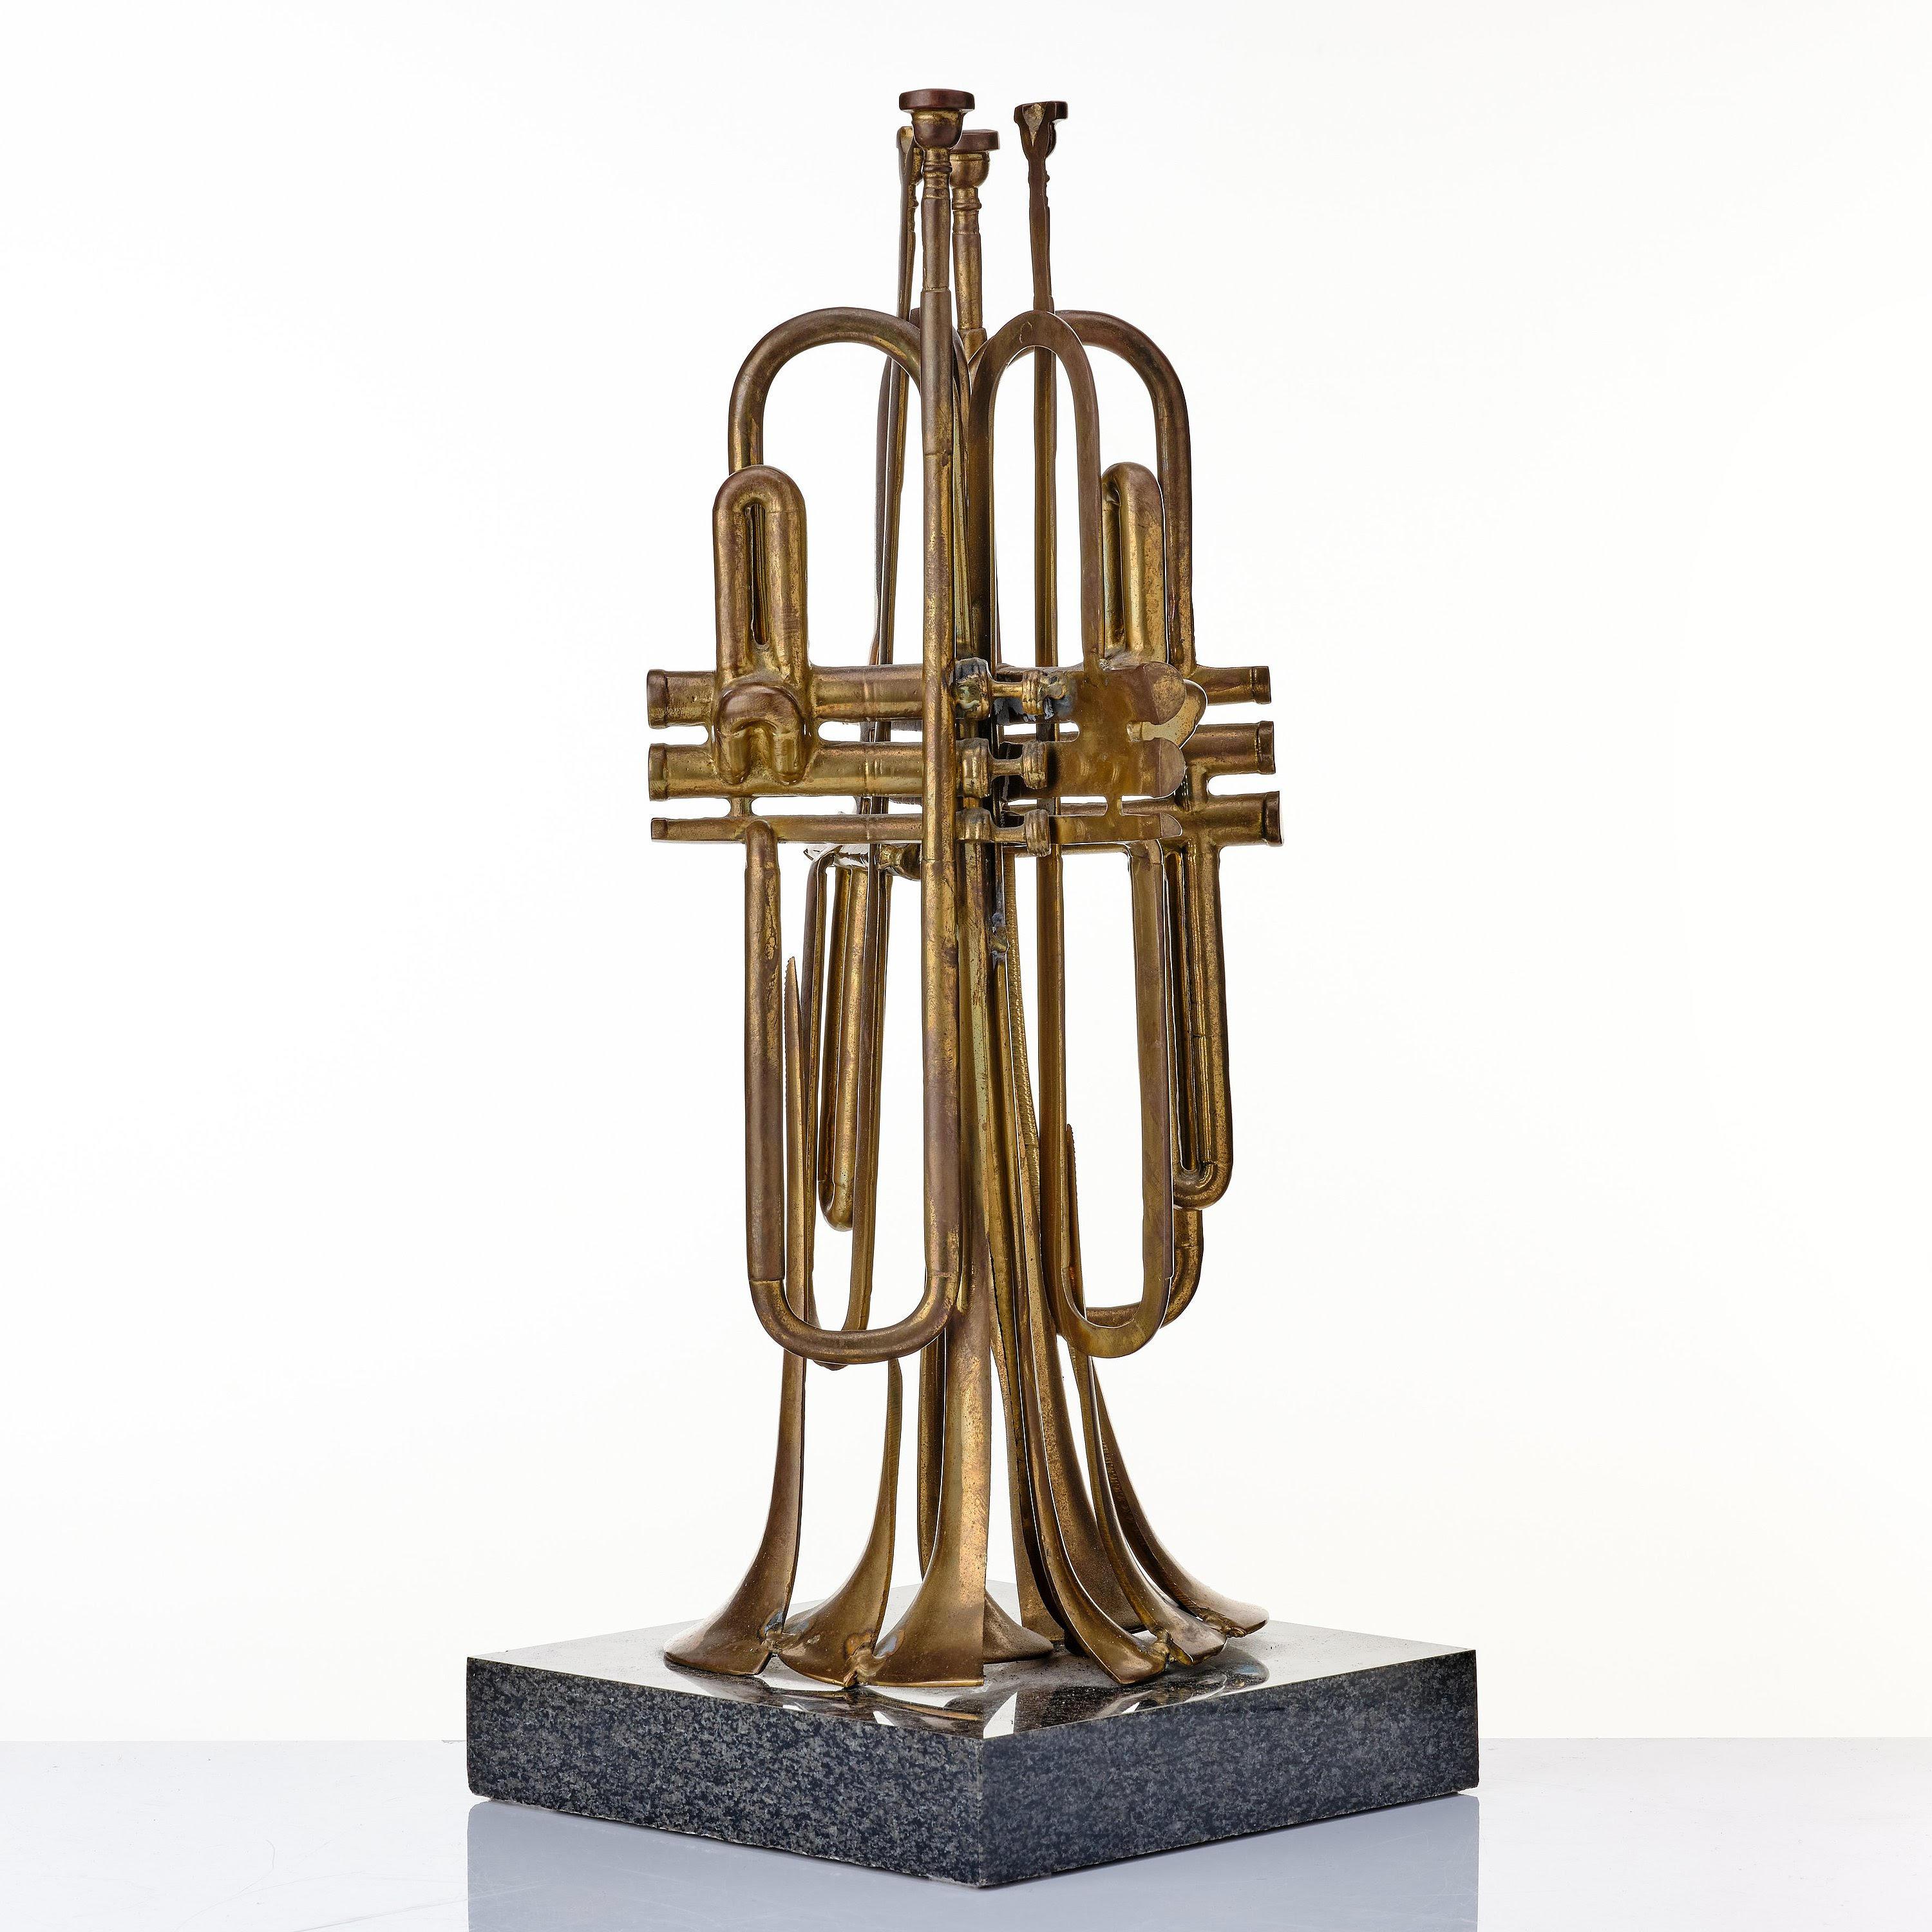 Schöne bemalte Bronze Trompettes Skulptur von der wichtigen Künstler - ARMAN.
signiert und nummeriert '99/100'
montiert auf Granitsockel (5 cm)  sehr schön und dekorativ.

Dieses Werk ist in den Arman Studio Archives New York unter der Nummer: APA#